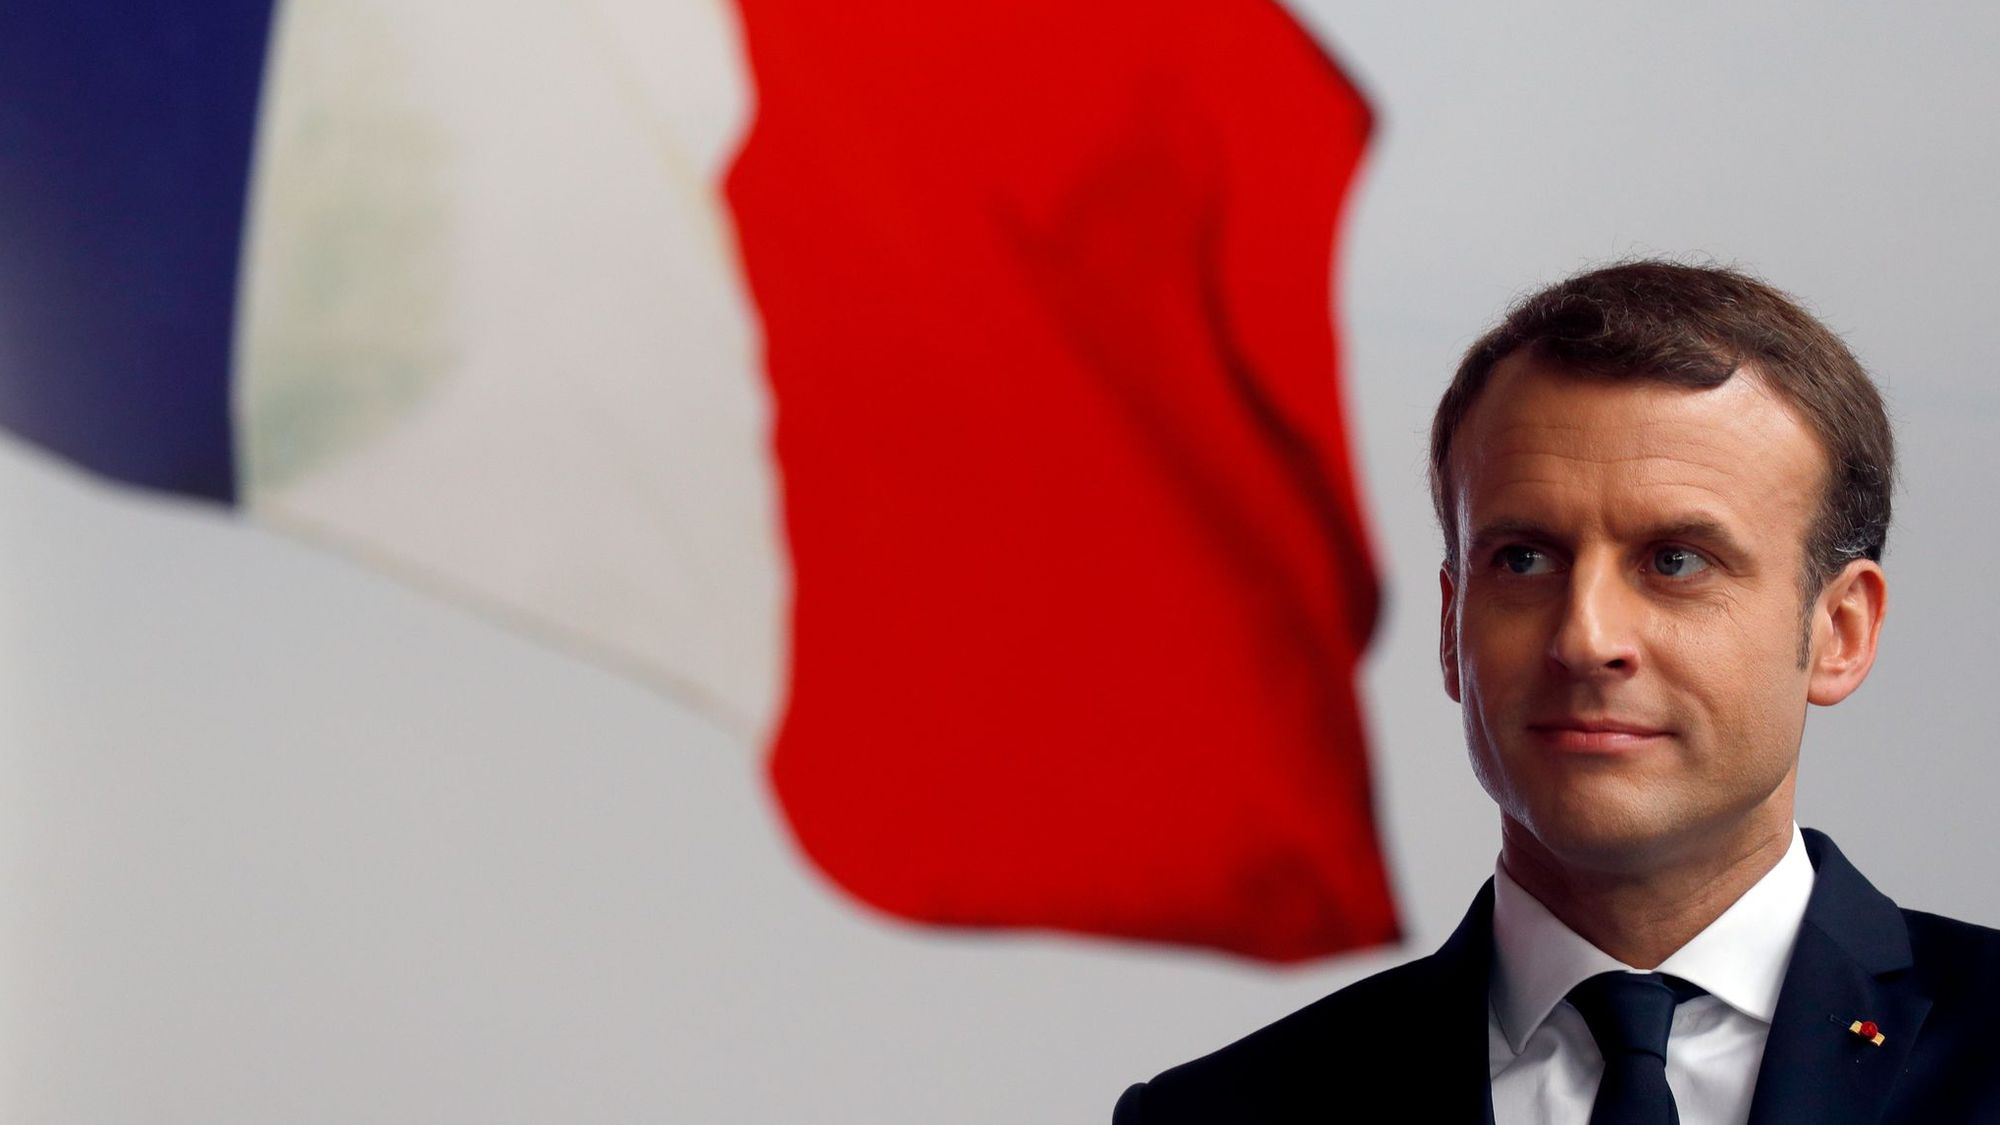 Emmanuel Macron, les quatre fondements d'un regain de popularité inédit - L'Express